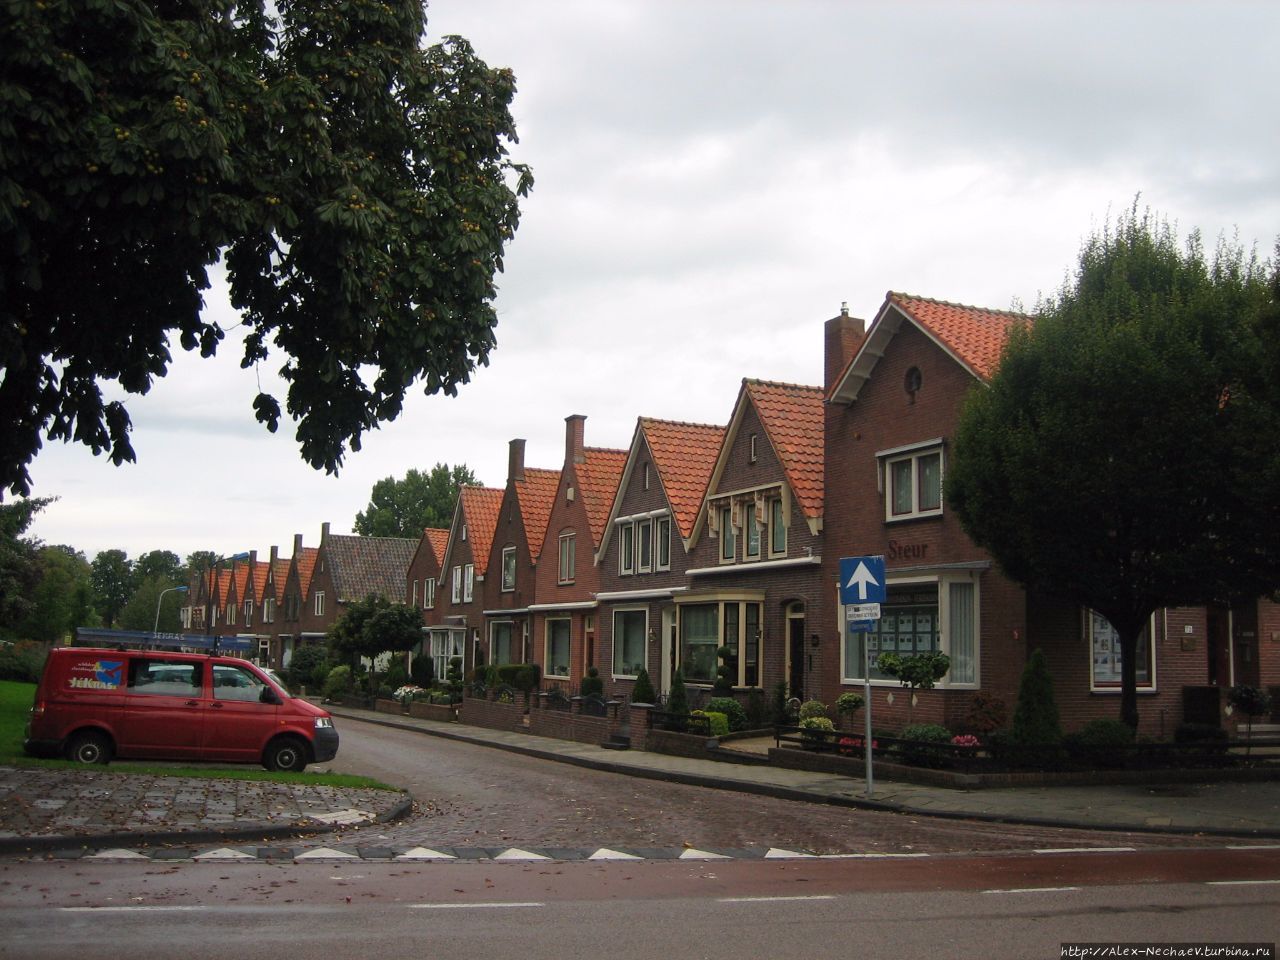 Типичная улочка Волендама Волендам, Нидерланды